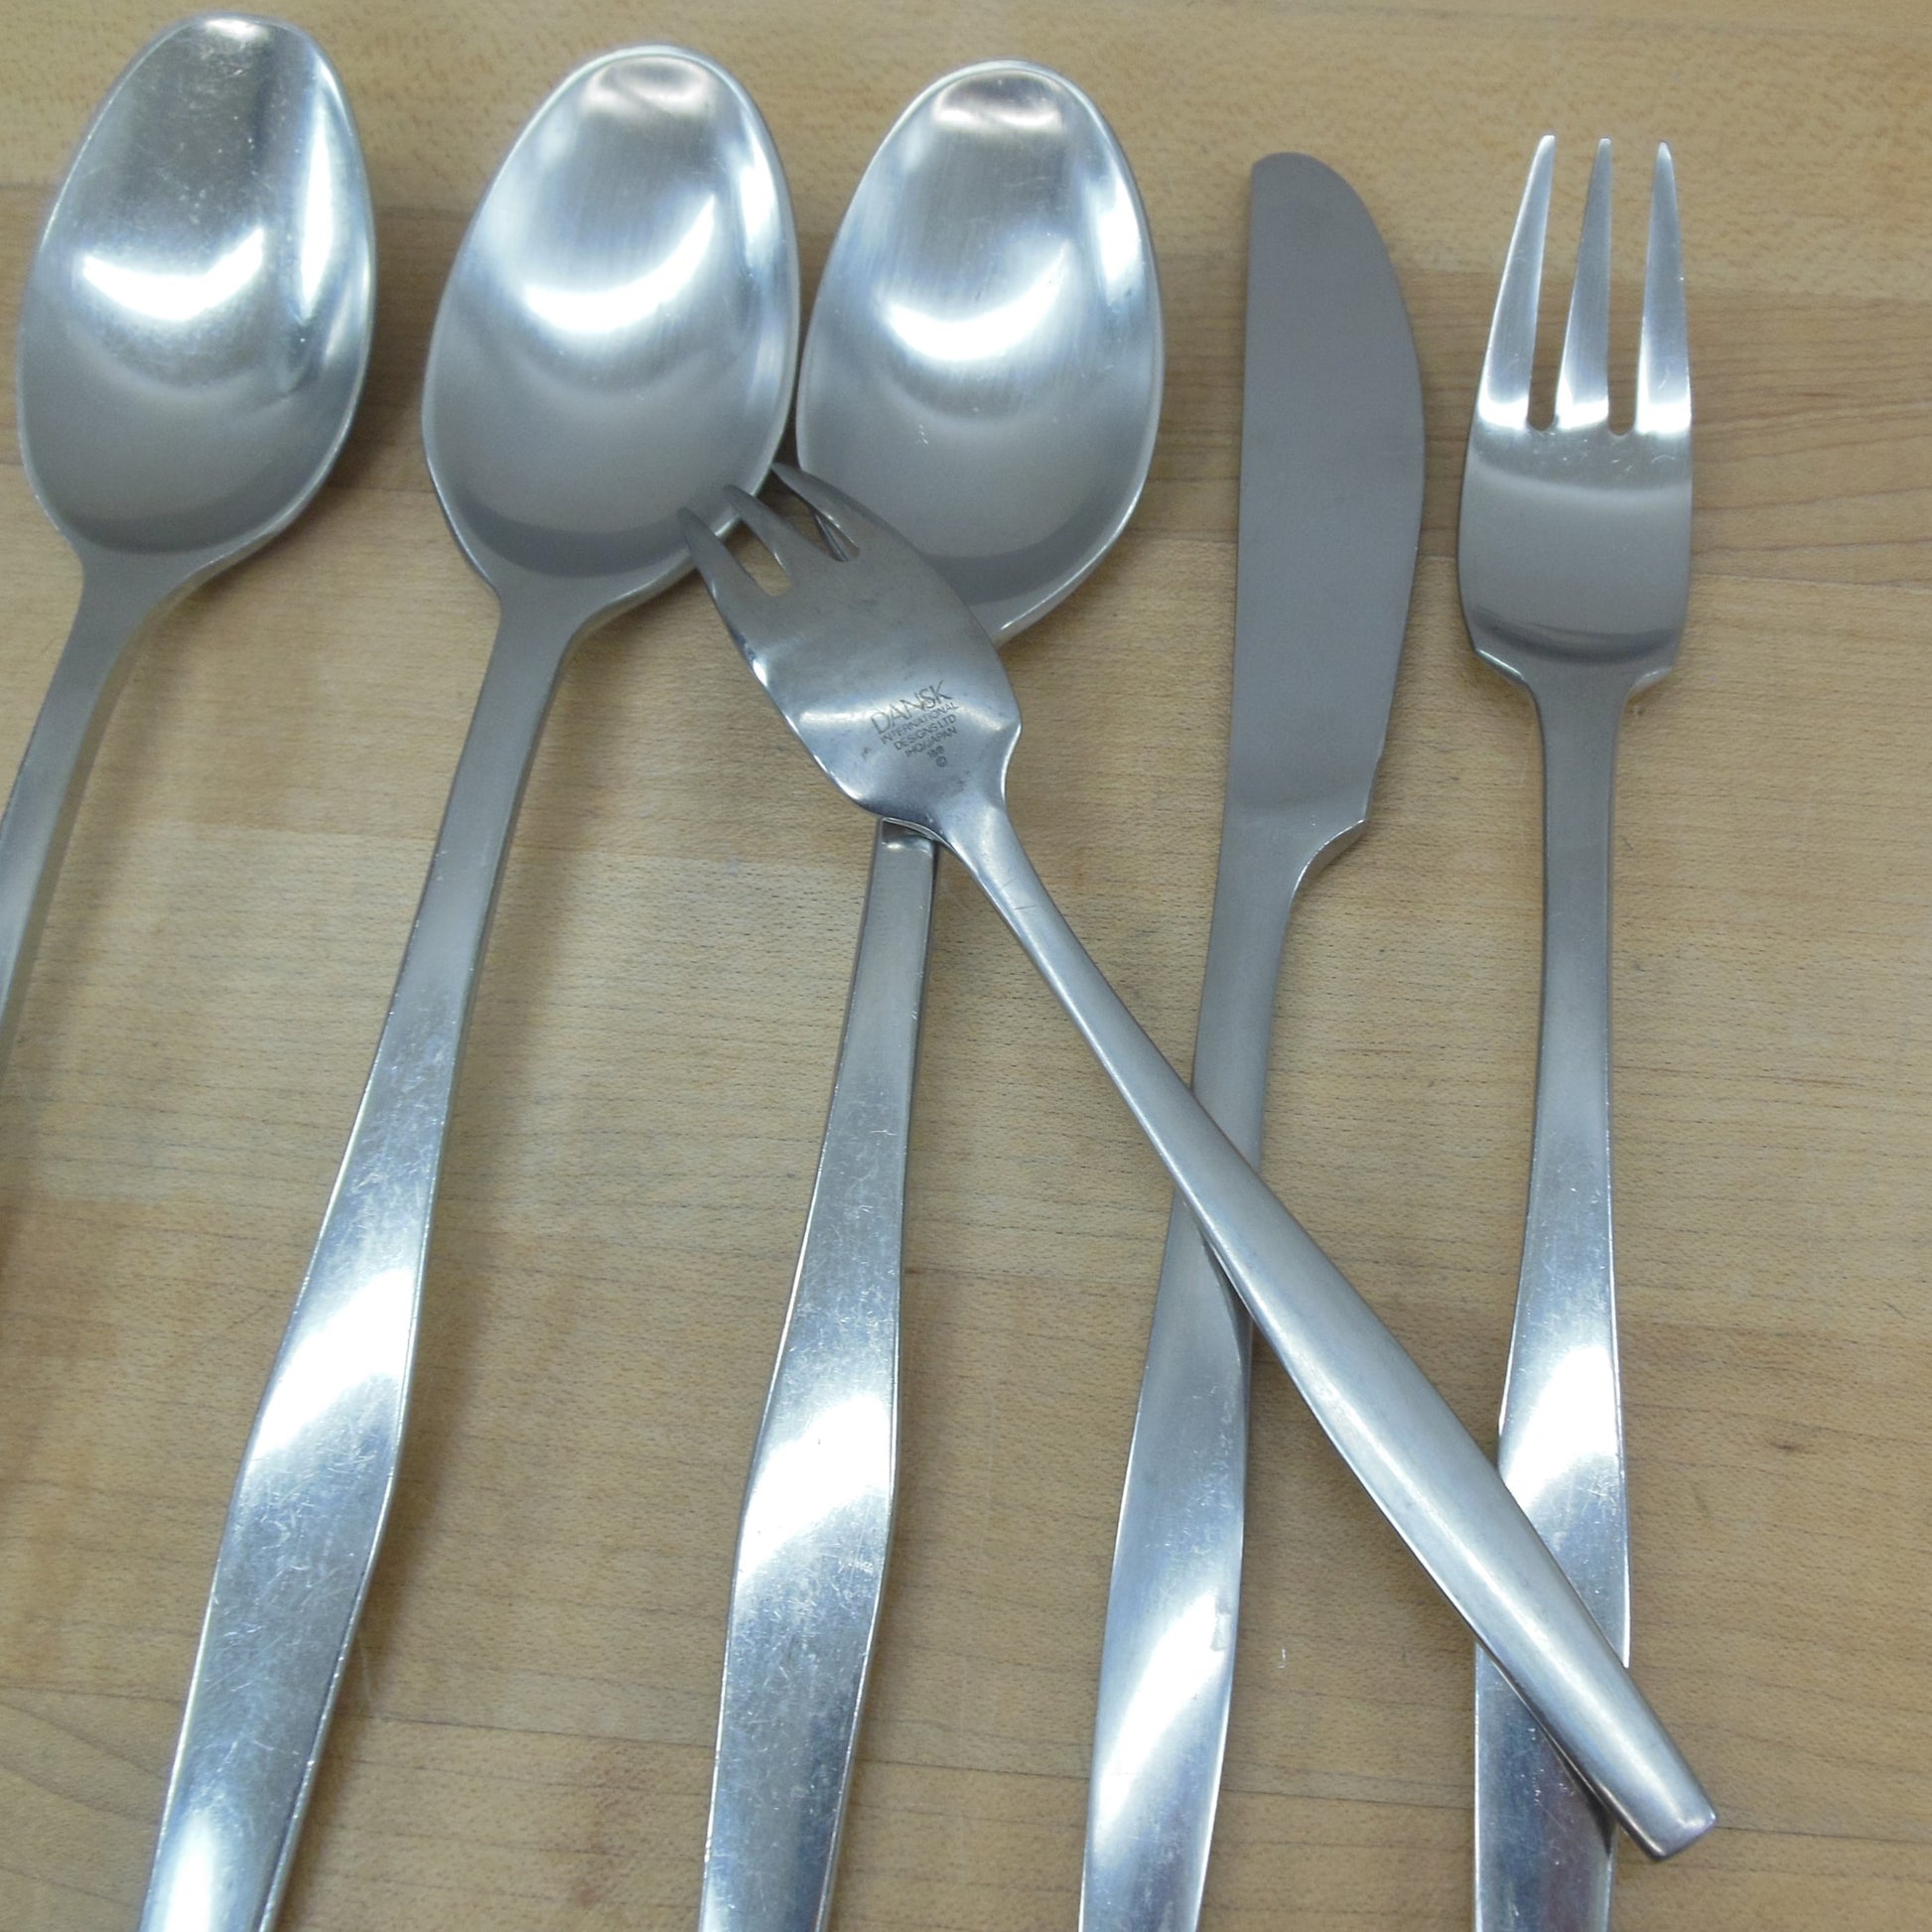 Dansk Variation V Finland Japan Stainless Flatware 5 Lot - Forks Knife Spoon used